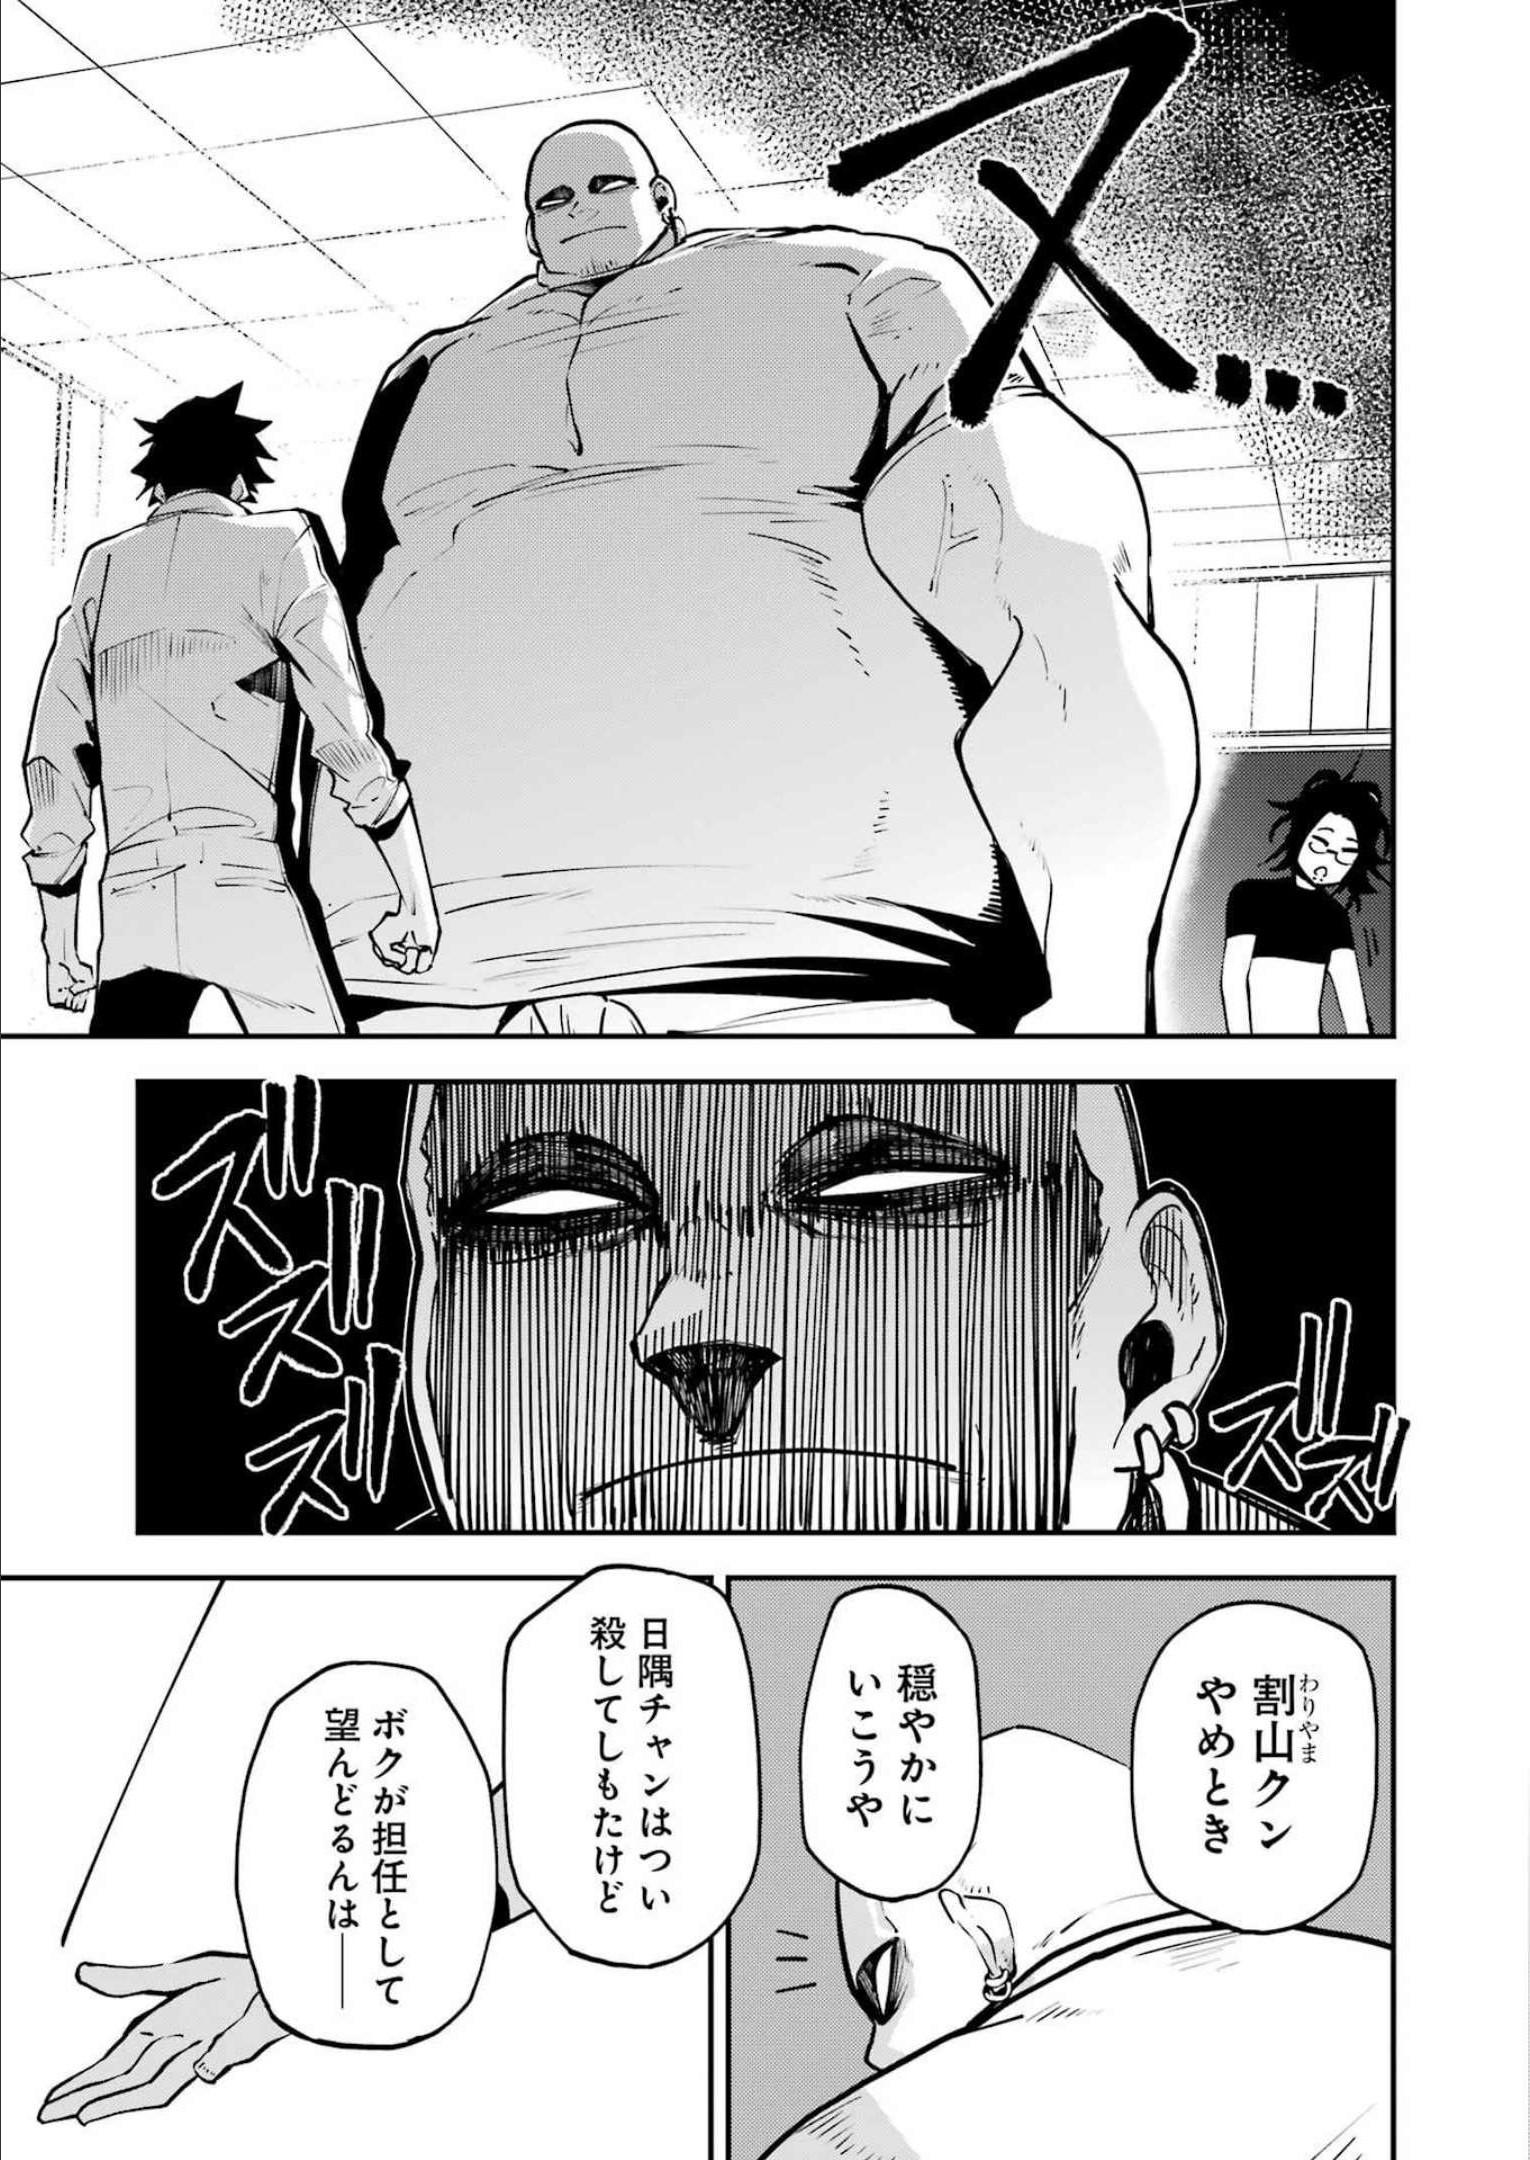 マーダーロック-殺人鬼の凶室-; Mādārokku – satsujinki no kyō-shitsu -; Murder Rock-The Murderer’s Chamber- 第28話 - Page 11